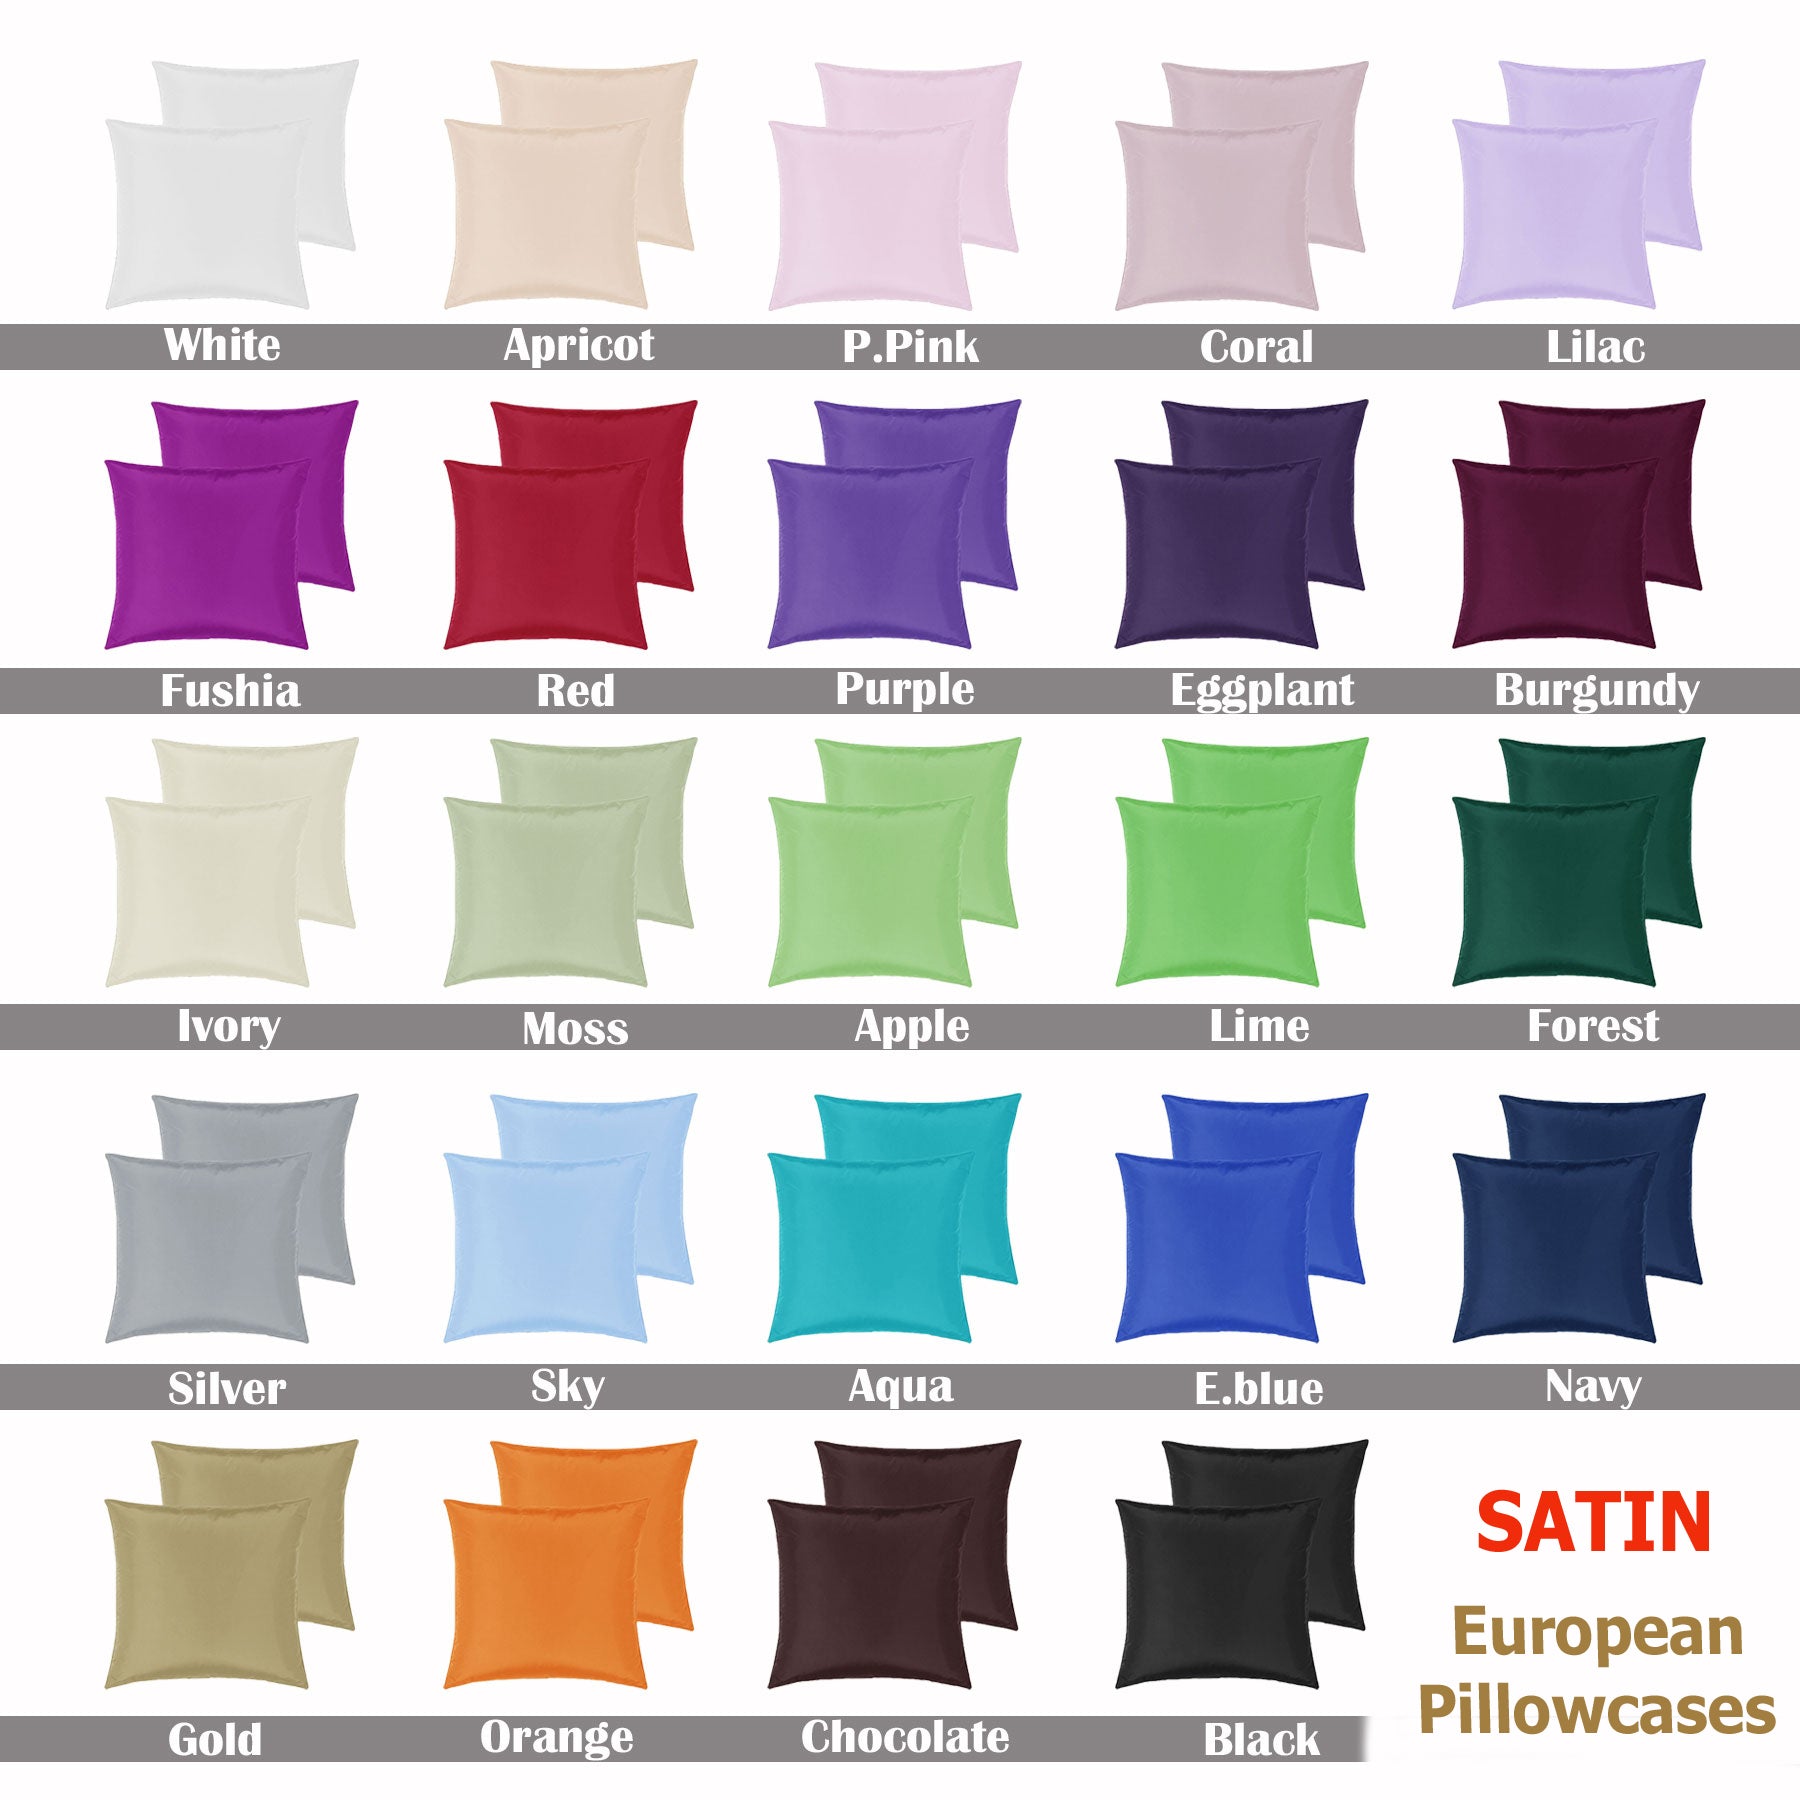 PepperMIll Satin European Pillowcases ( Pair ) NAVY